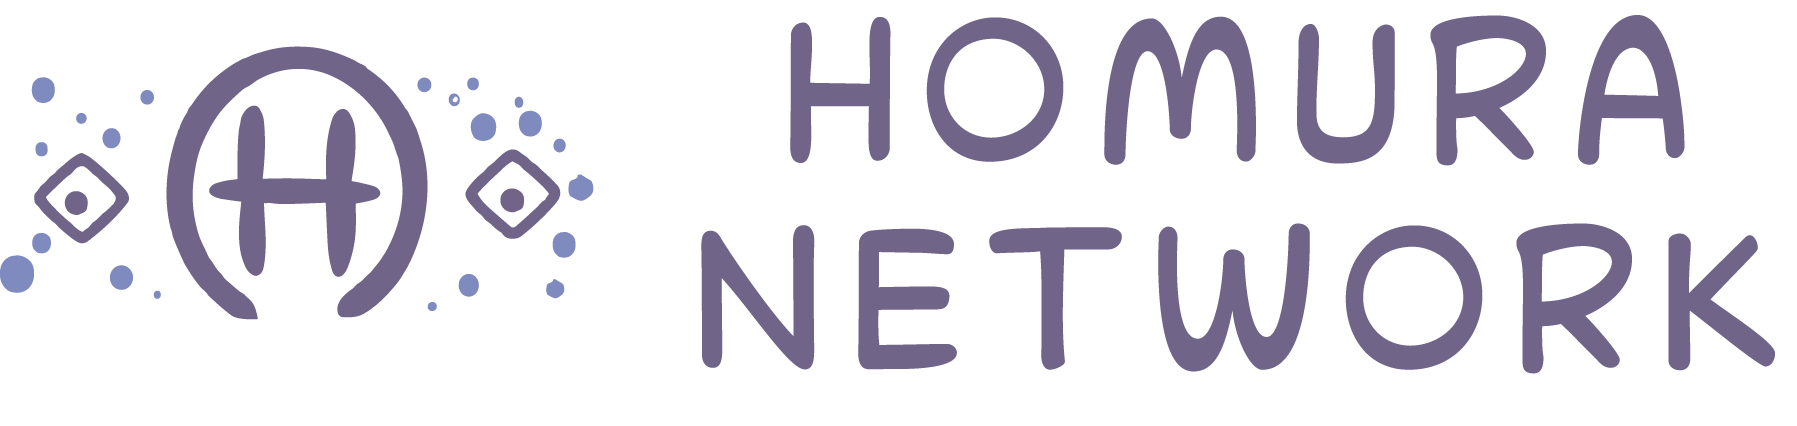 Homura Network